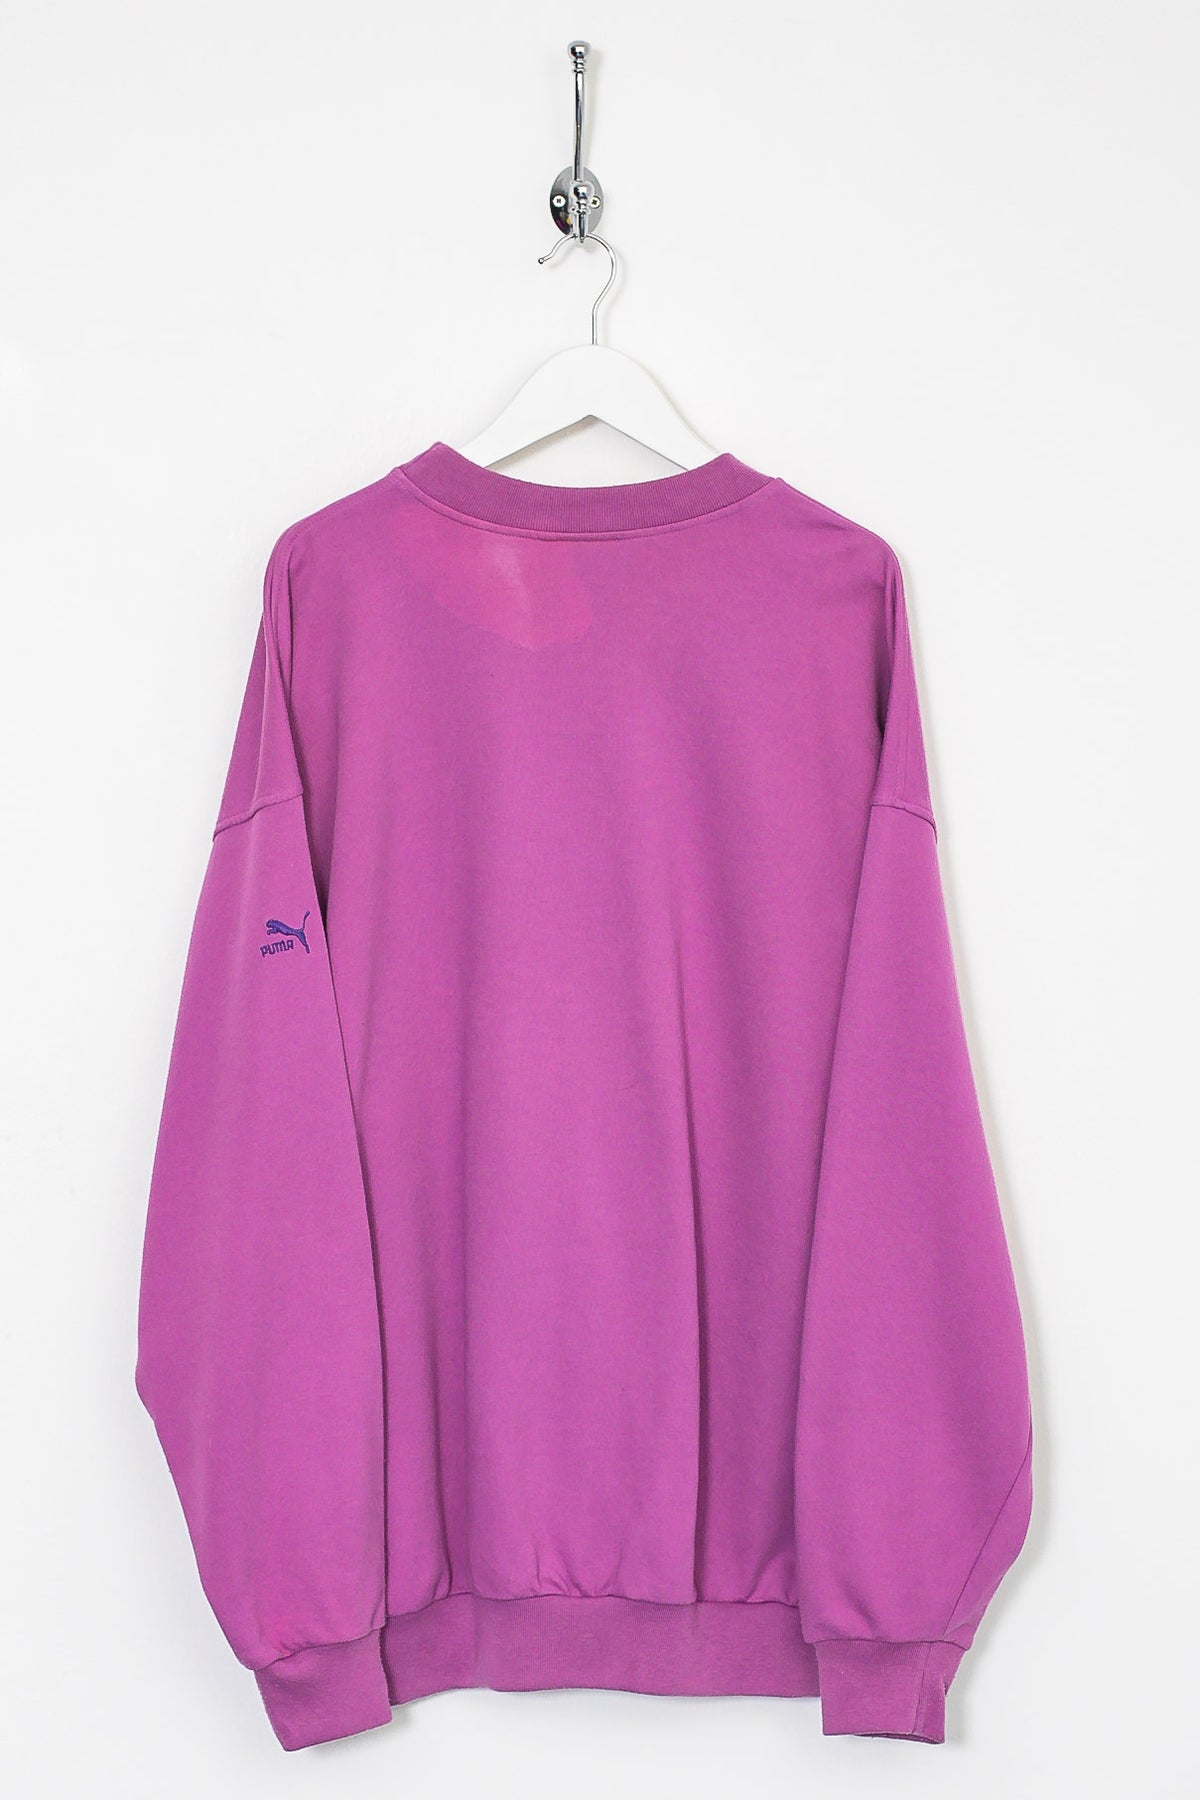 90s Puma Sweatshirt (L)